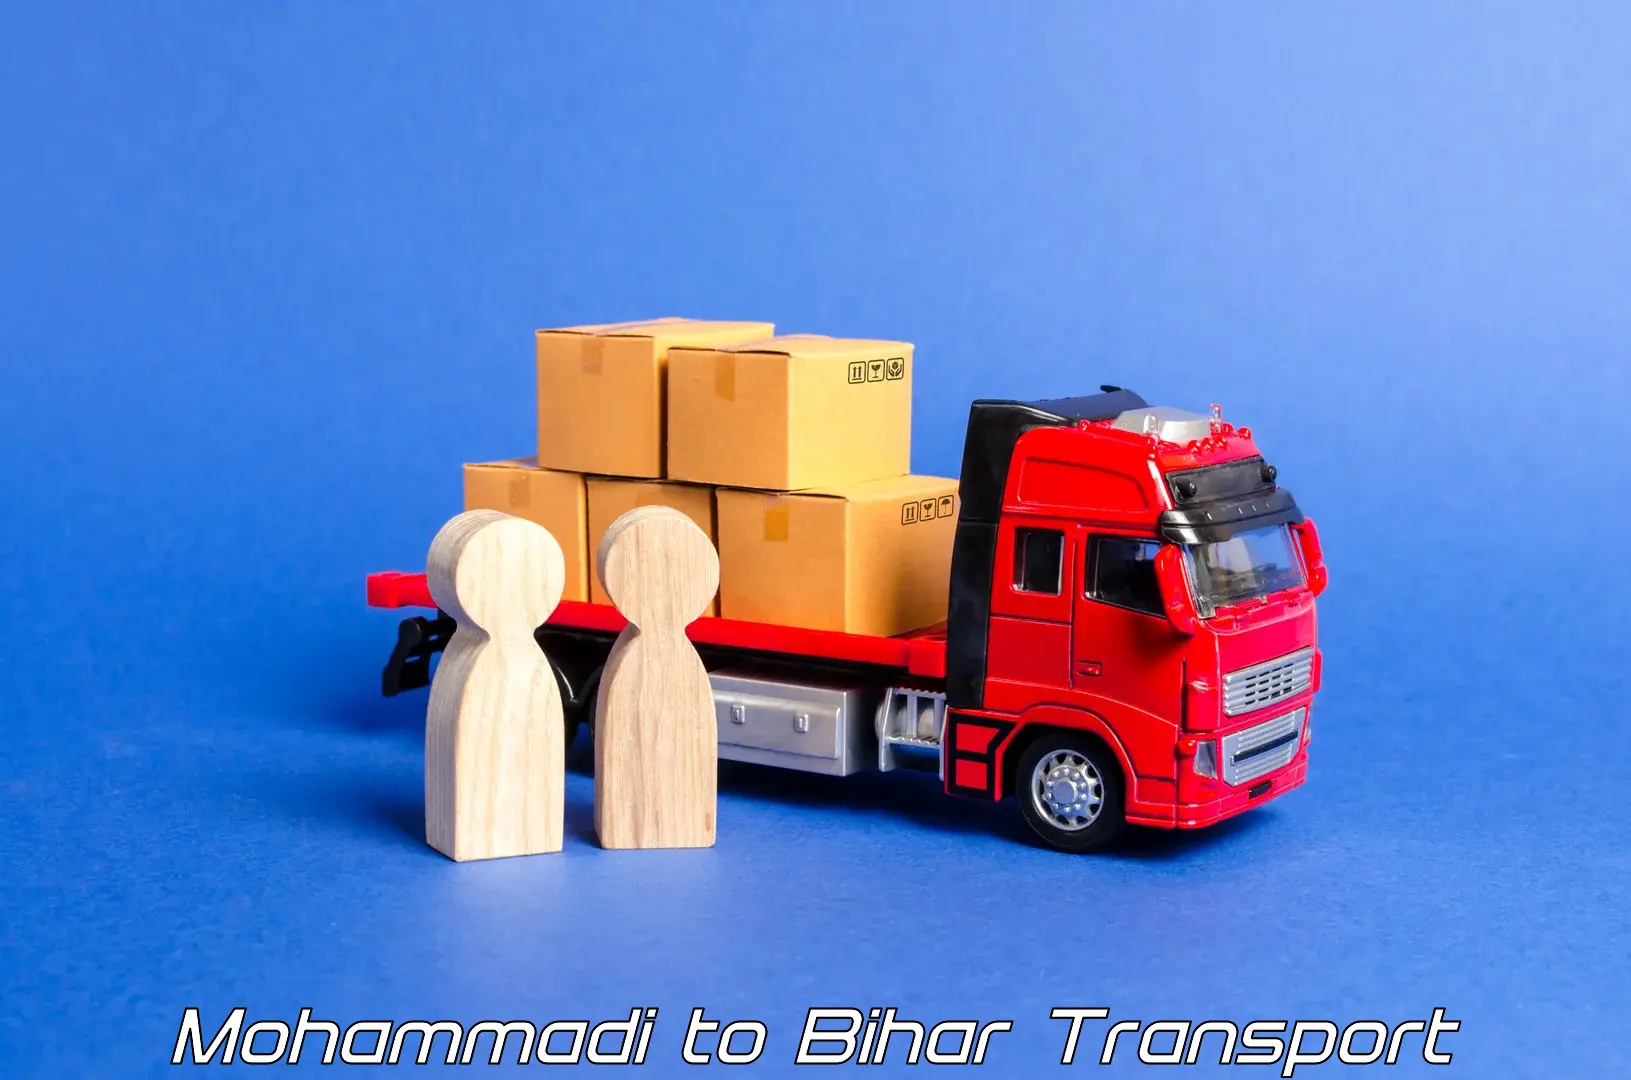 Interstate transport services Mohammadi to Saraiya